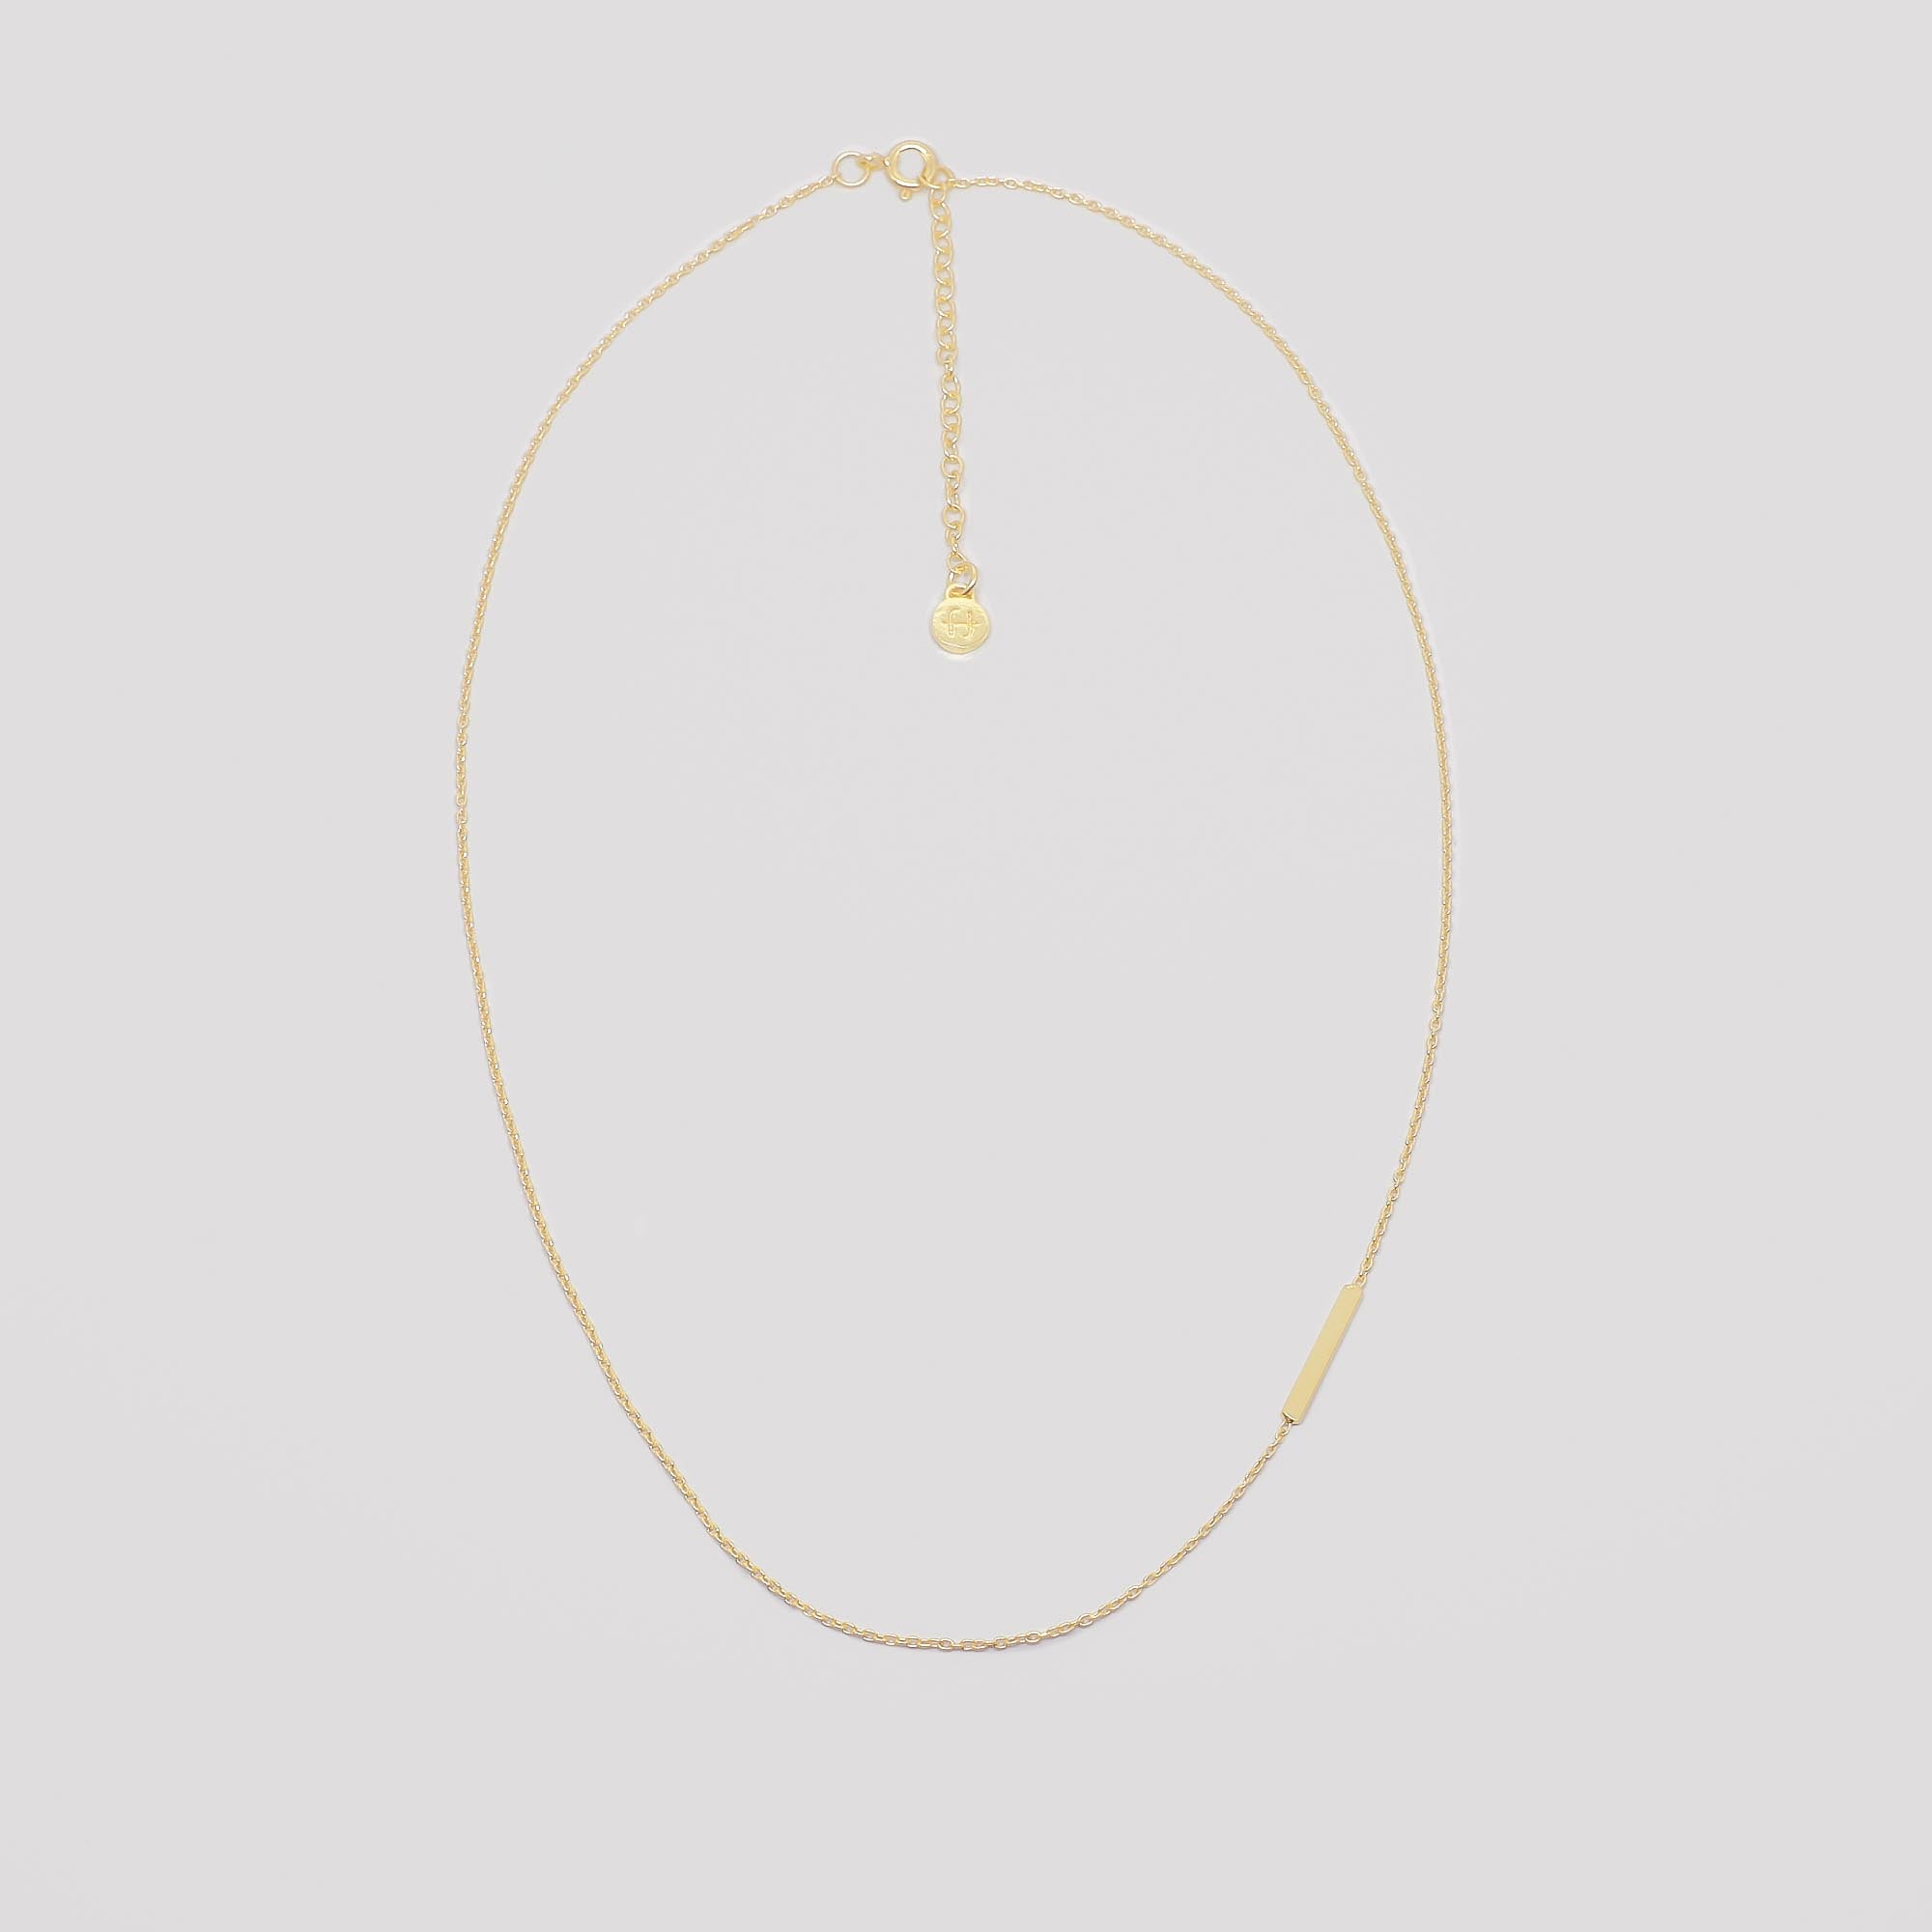 Kette bar necklace gold, nachhaltiger Schmuck